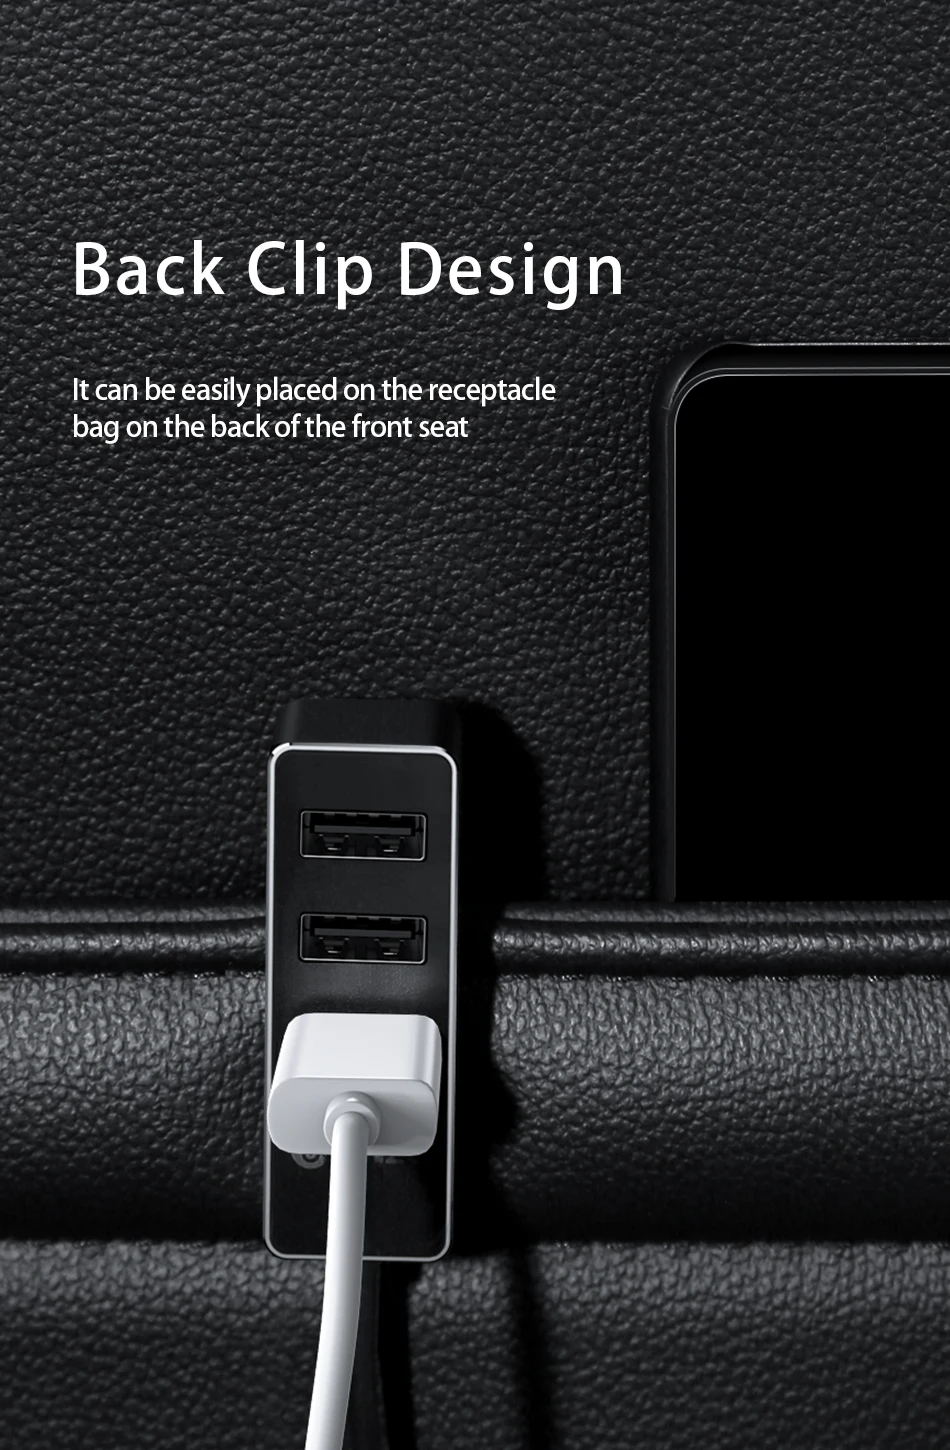 Быстрое Автомобильное зарядное устройство Biaze 5V 5.5A 4 USB 1,5 M кабель для iPhone iPad samsung планшет зарядное устройство USB Автомобильное зарядное устройство адаптер